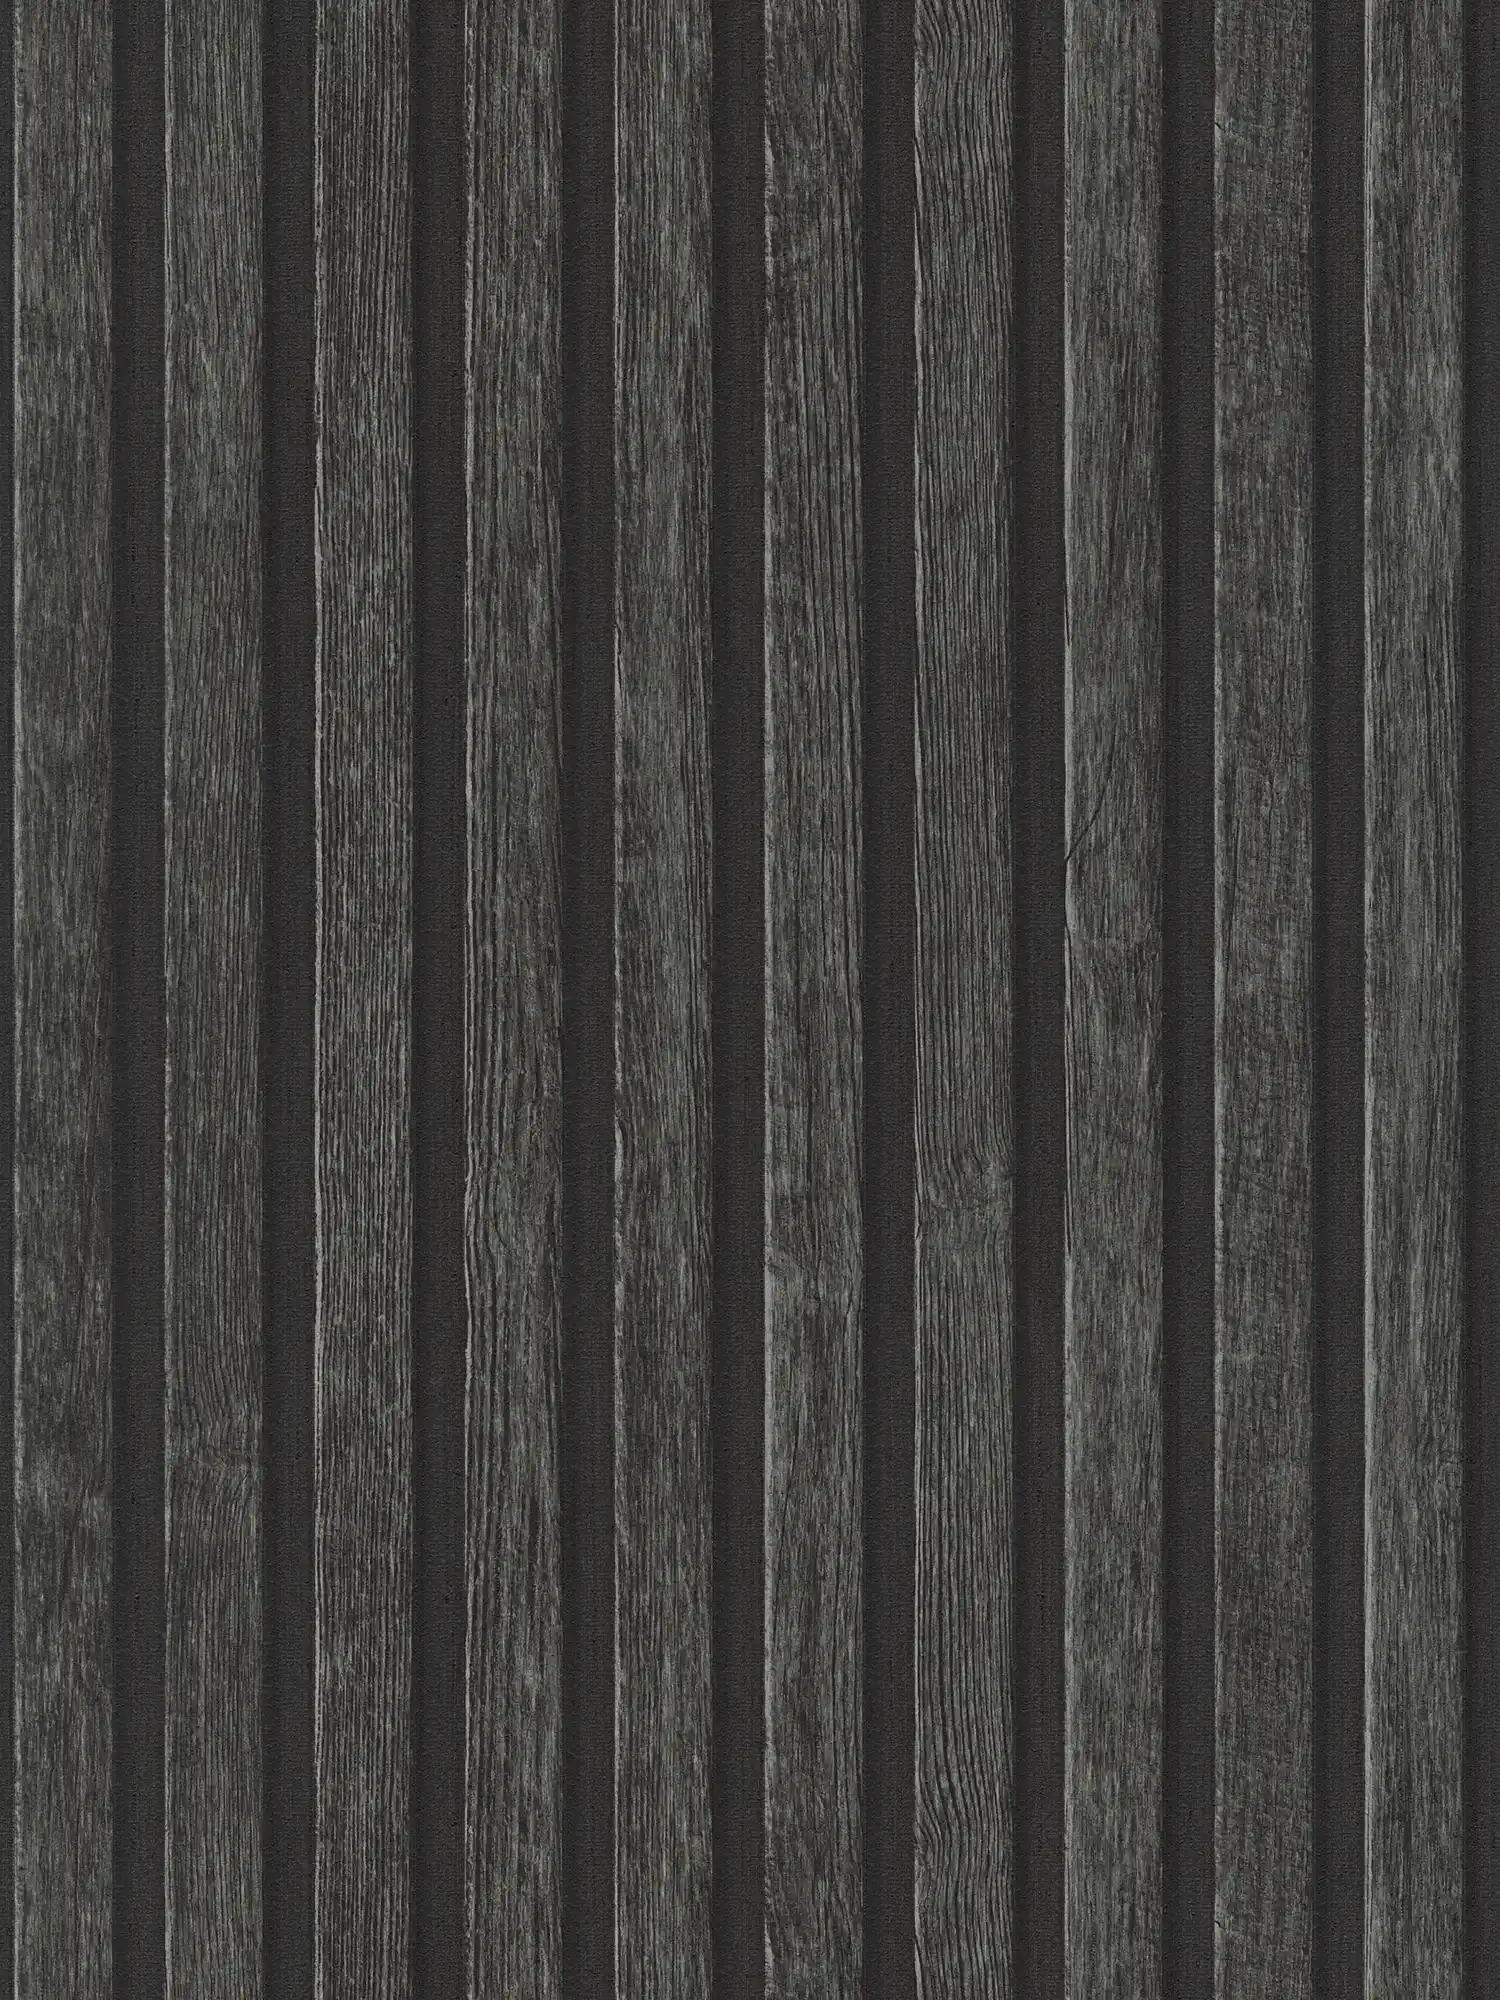         Papier peint imitation bois avec motif de lambris - noir, marron
    